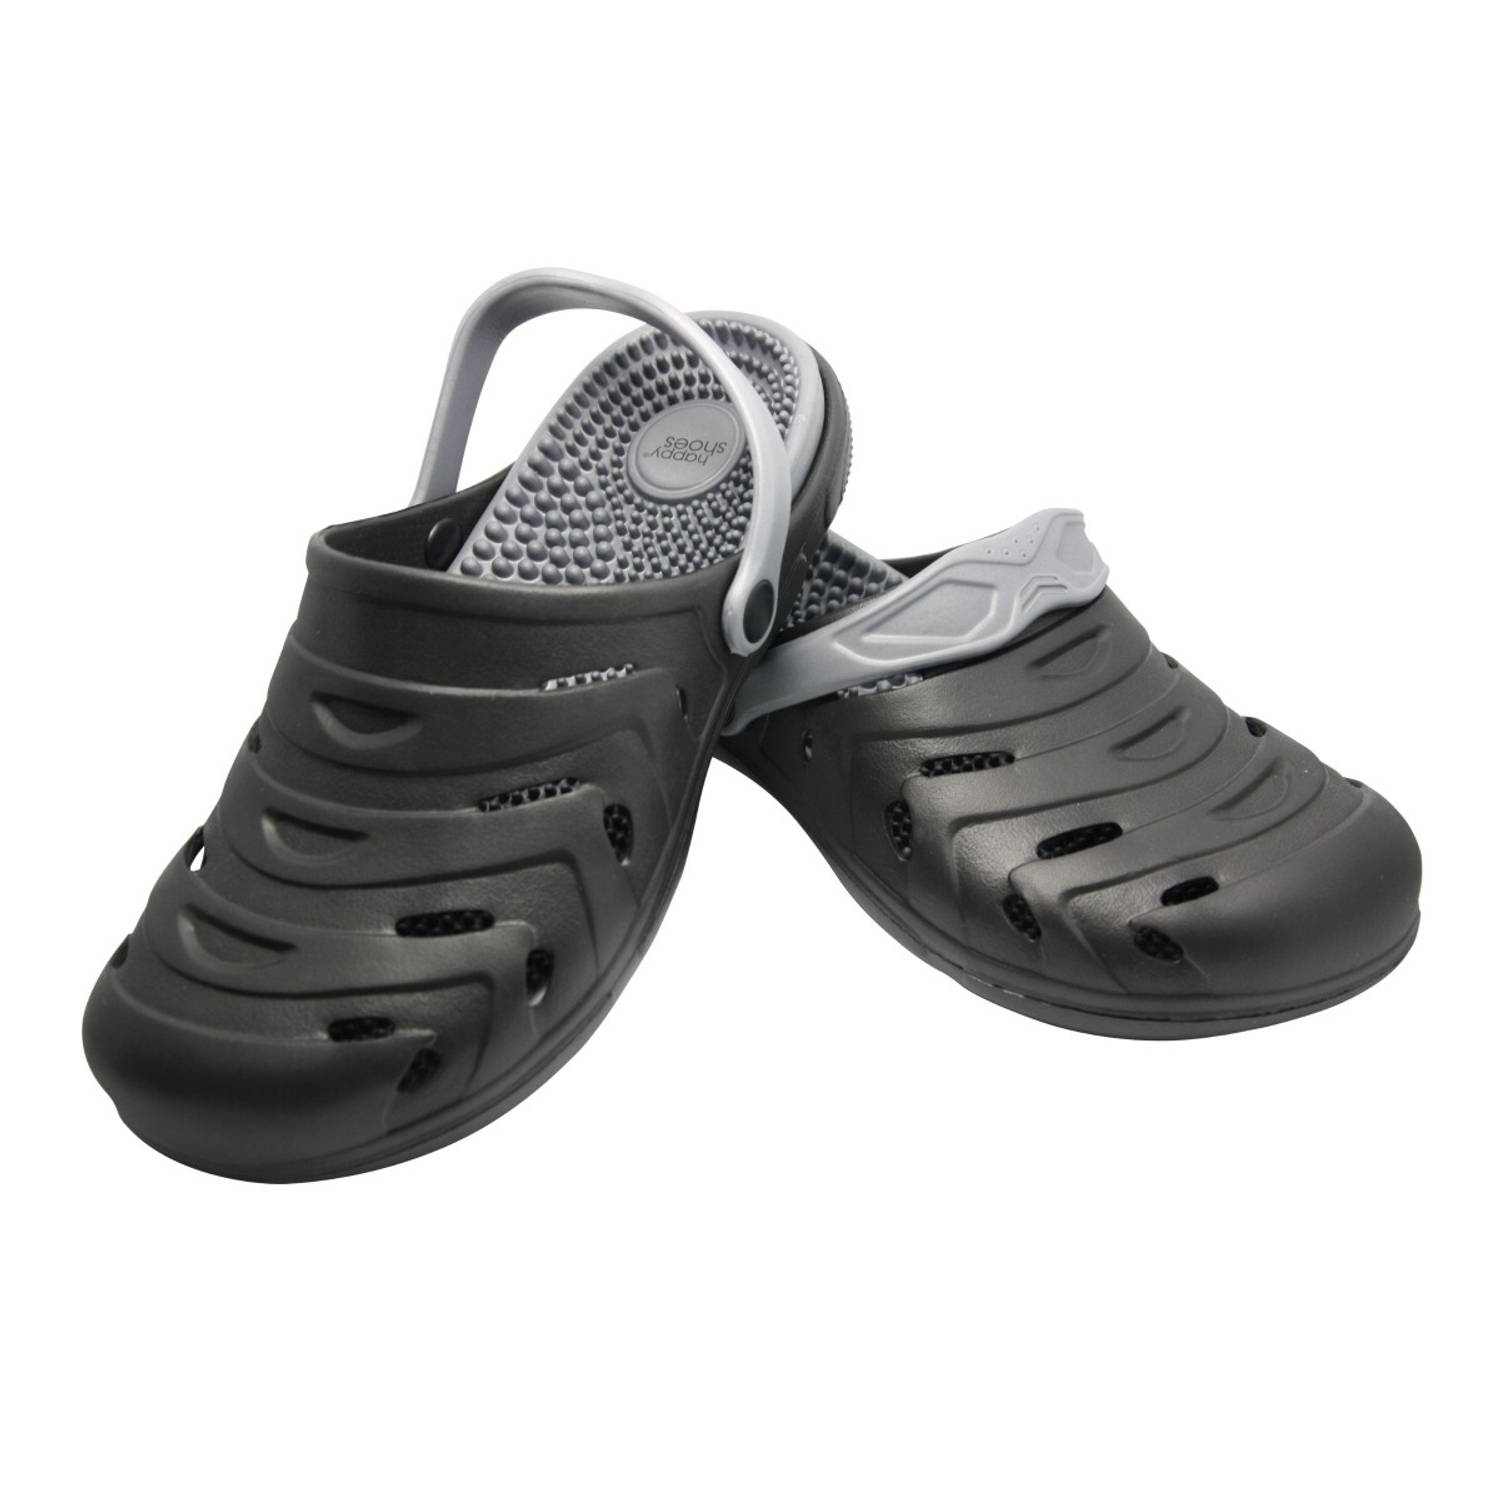 Happy Shoes Massage Clogs – maat 41 – zwart – Pantoffels, slippers en sloffen voor mannen en vrouwen – uitneembare zool